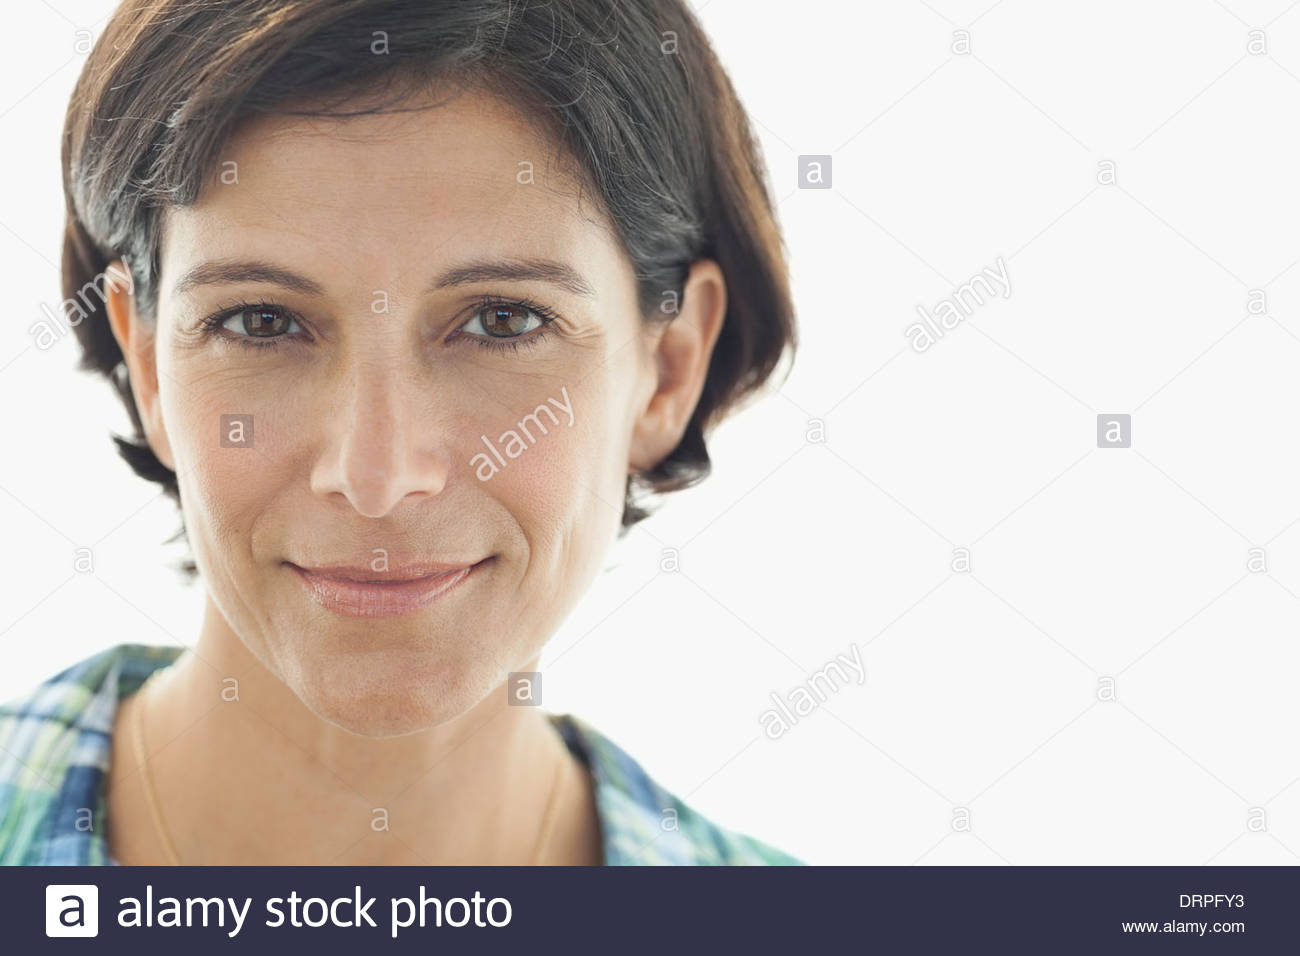 Close-up retrato de mujer hermosa contra el fondo blanco. Foto de stock